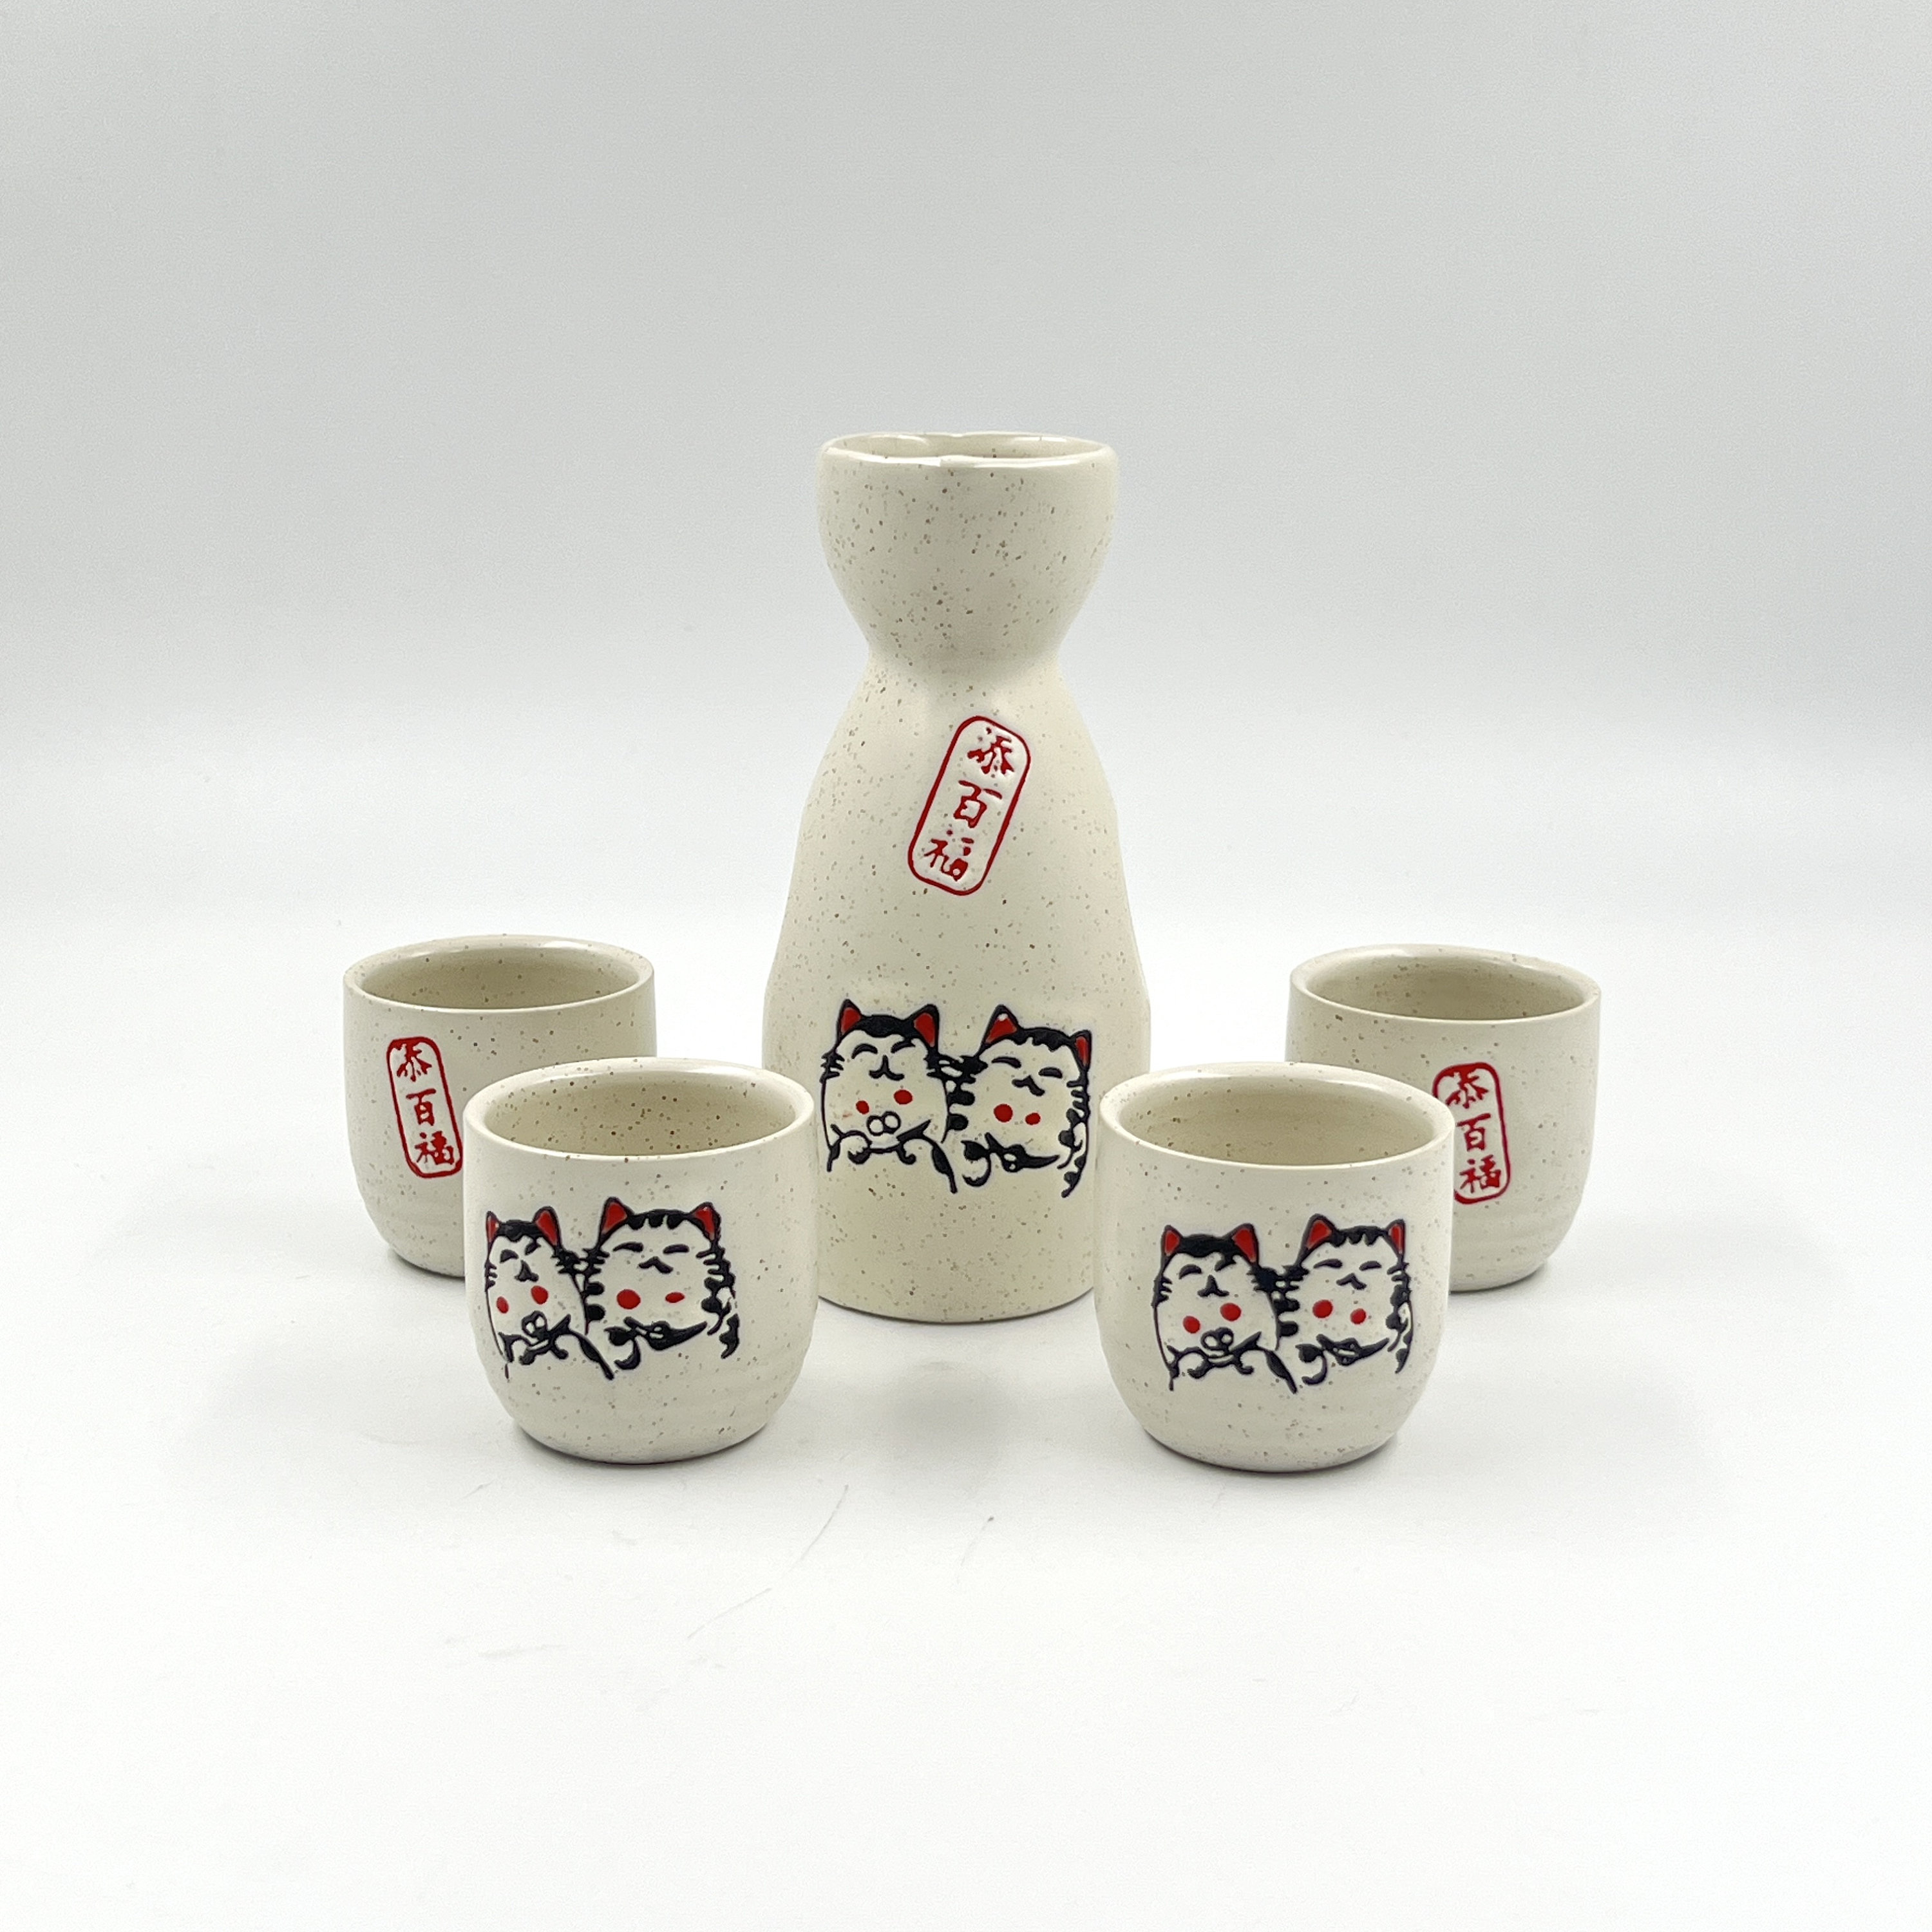 Buy Japanese Sake Set Online In India -  India